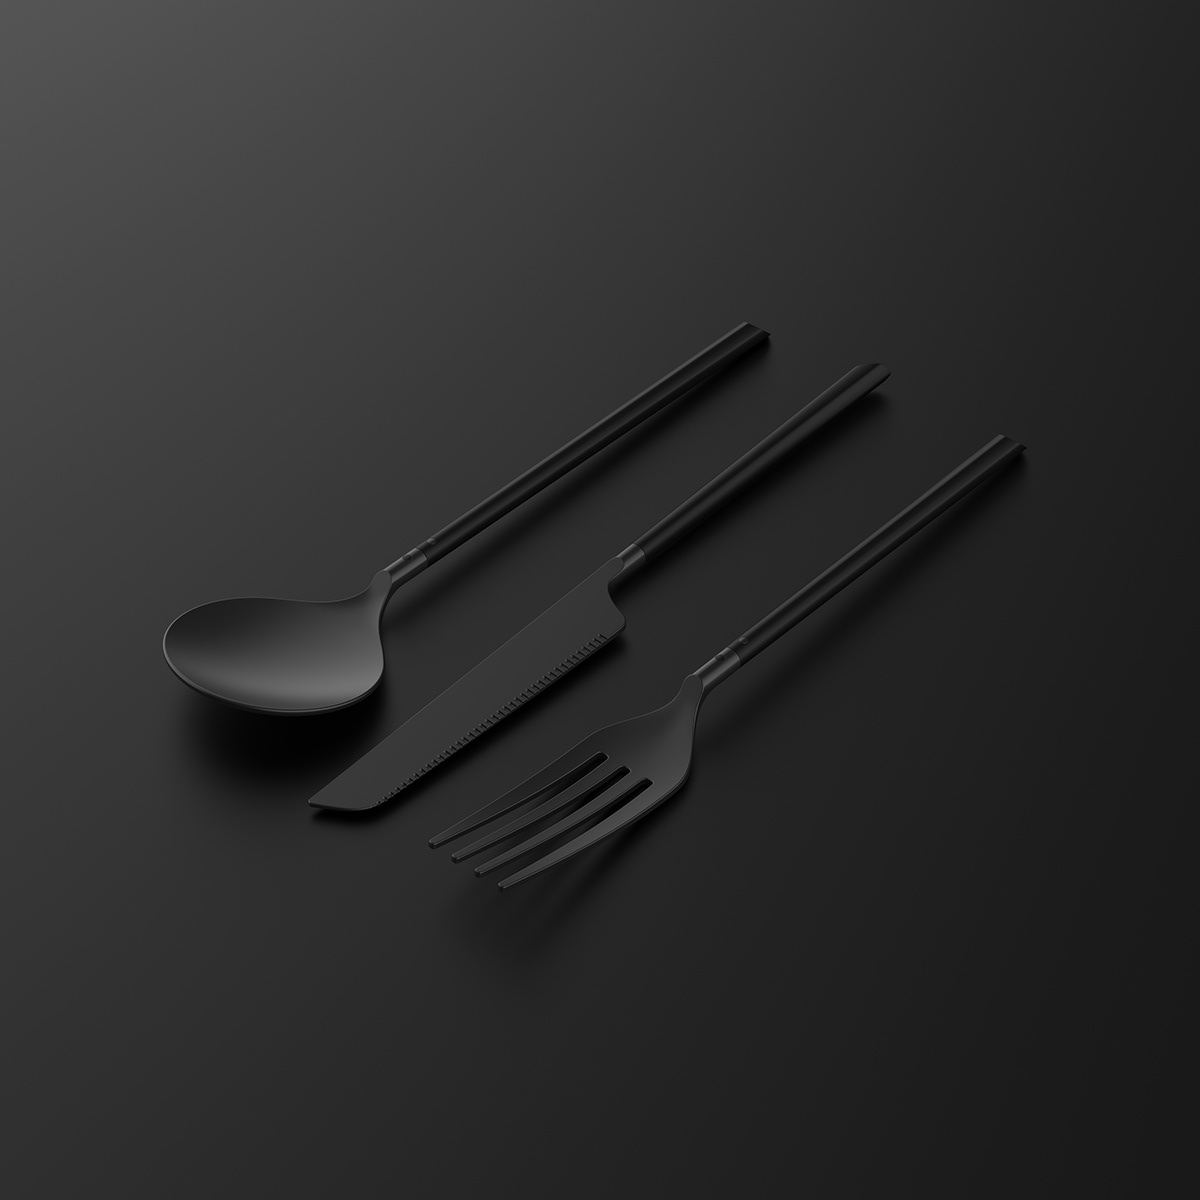 cutlery flatware fork industrial design  kitchen knife spoon Stand storage utensils